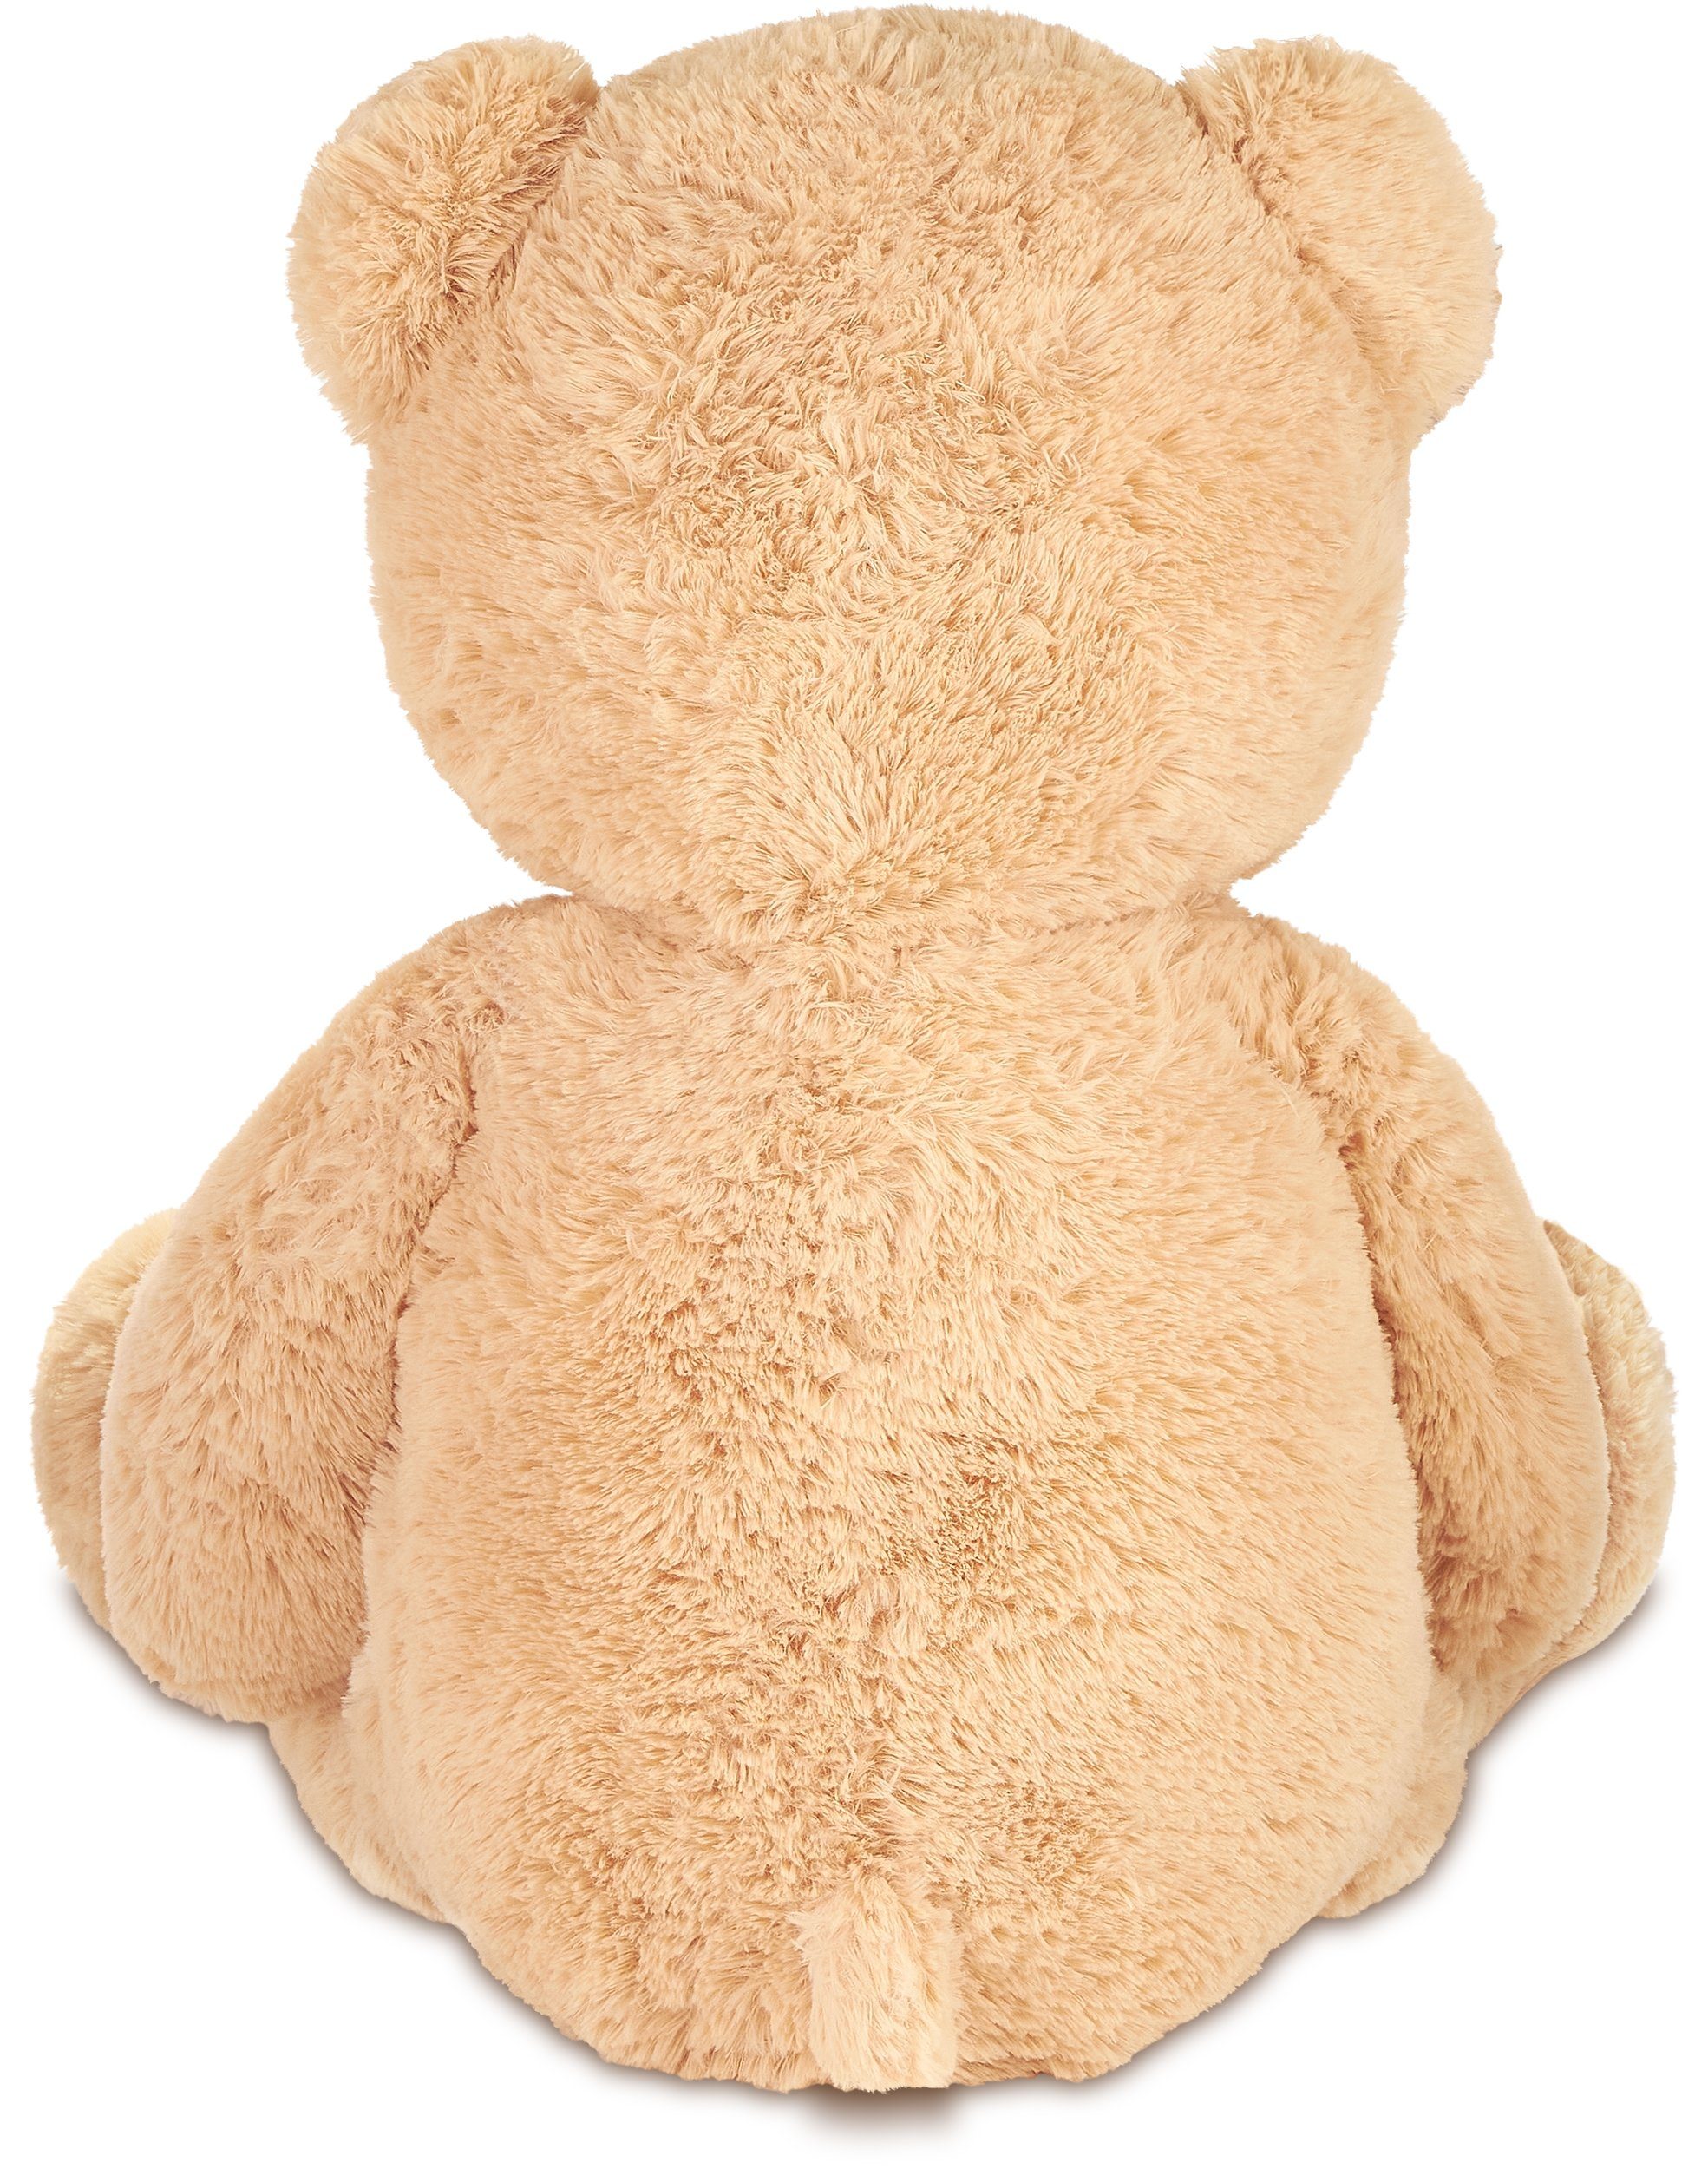 Teddybär mit Herz Ich liebe dich 17 cm Beige Teddy Plüschtier Kuscheltier Bär 